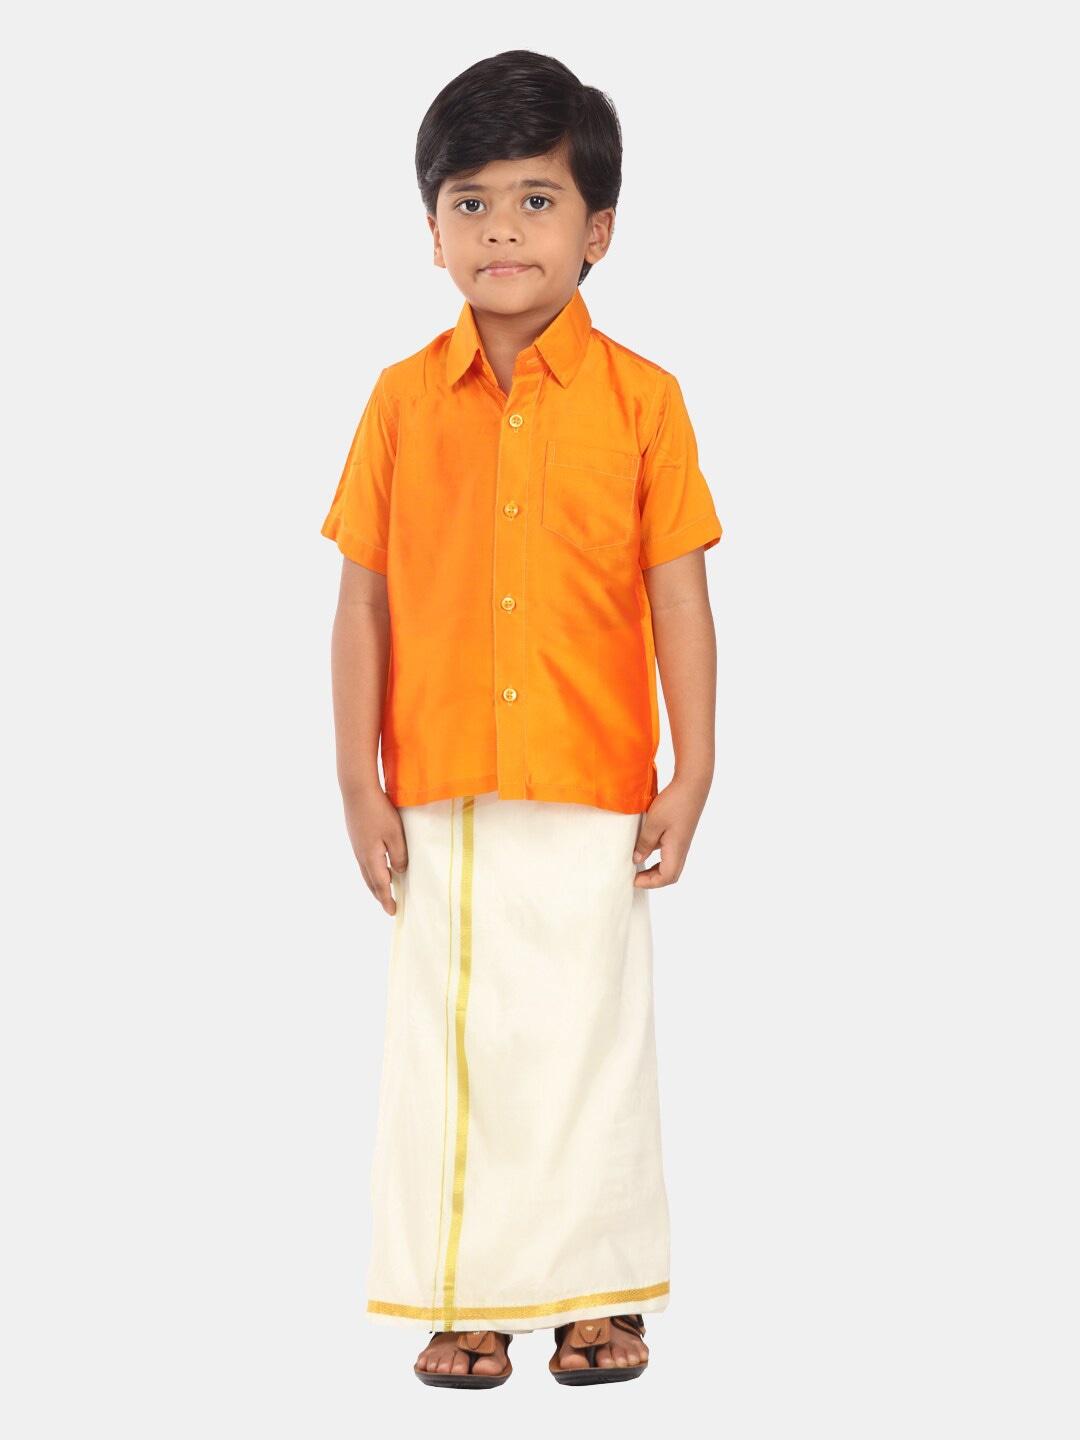 Sethukrishna Boys Ethnic Shirt And Dhoti Clothing Set